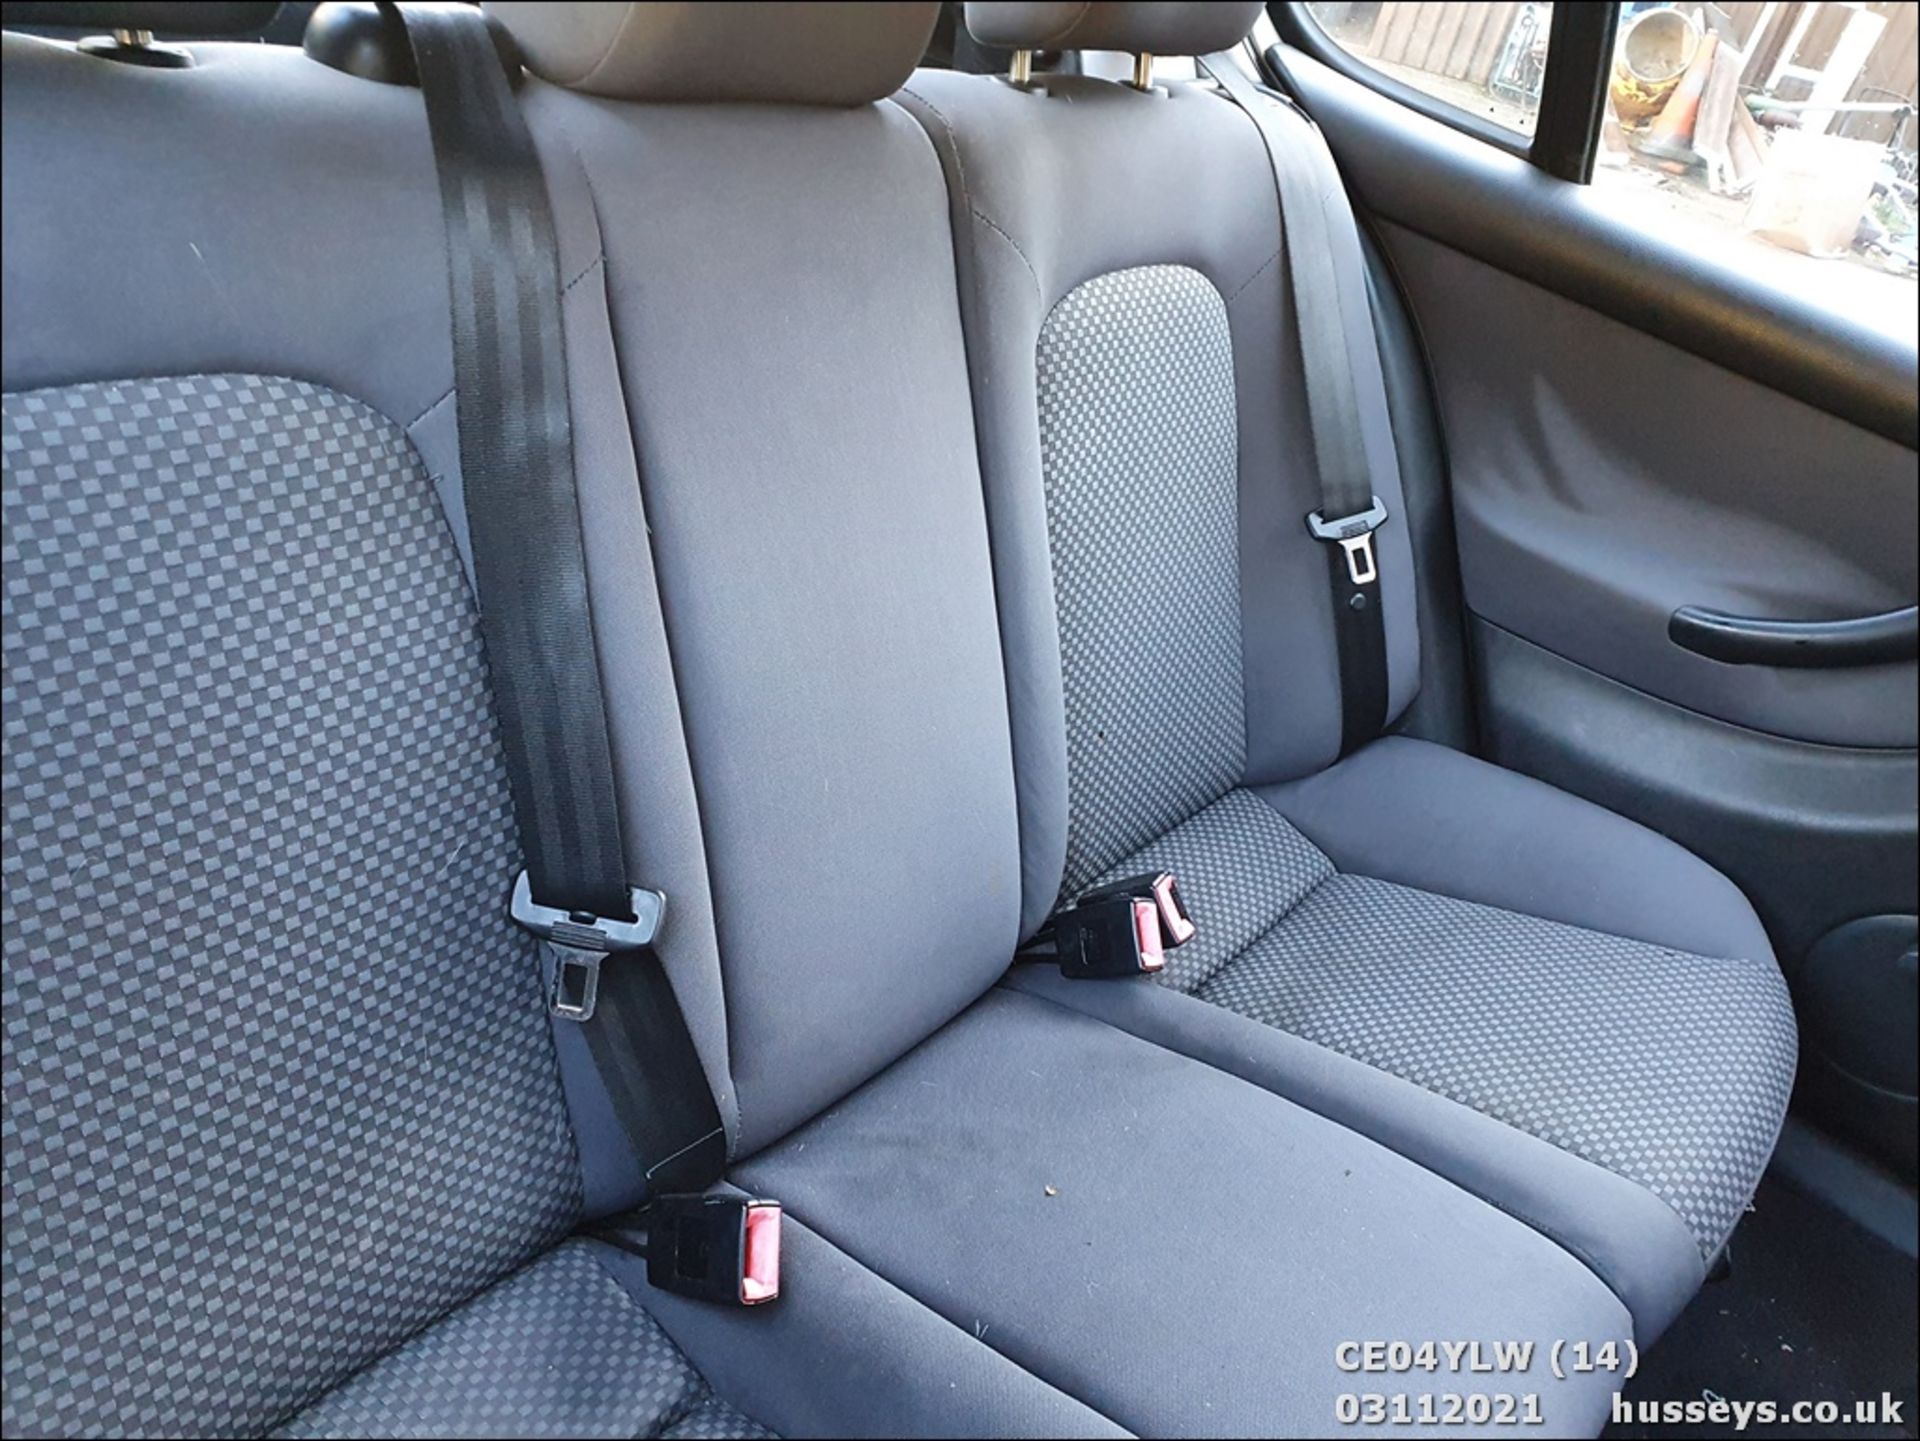 04/04 SEAT LEON S 16V - 1390cc 5dr Hatchback (Beige, 156k) - Image 16 of 17